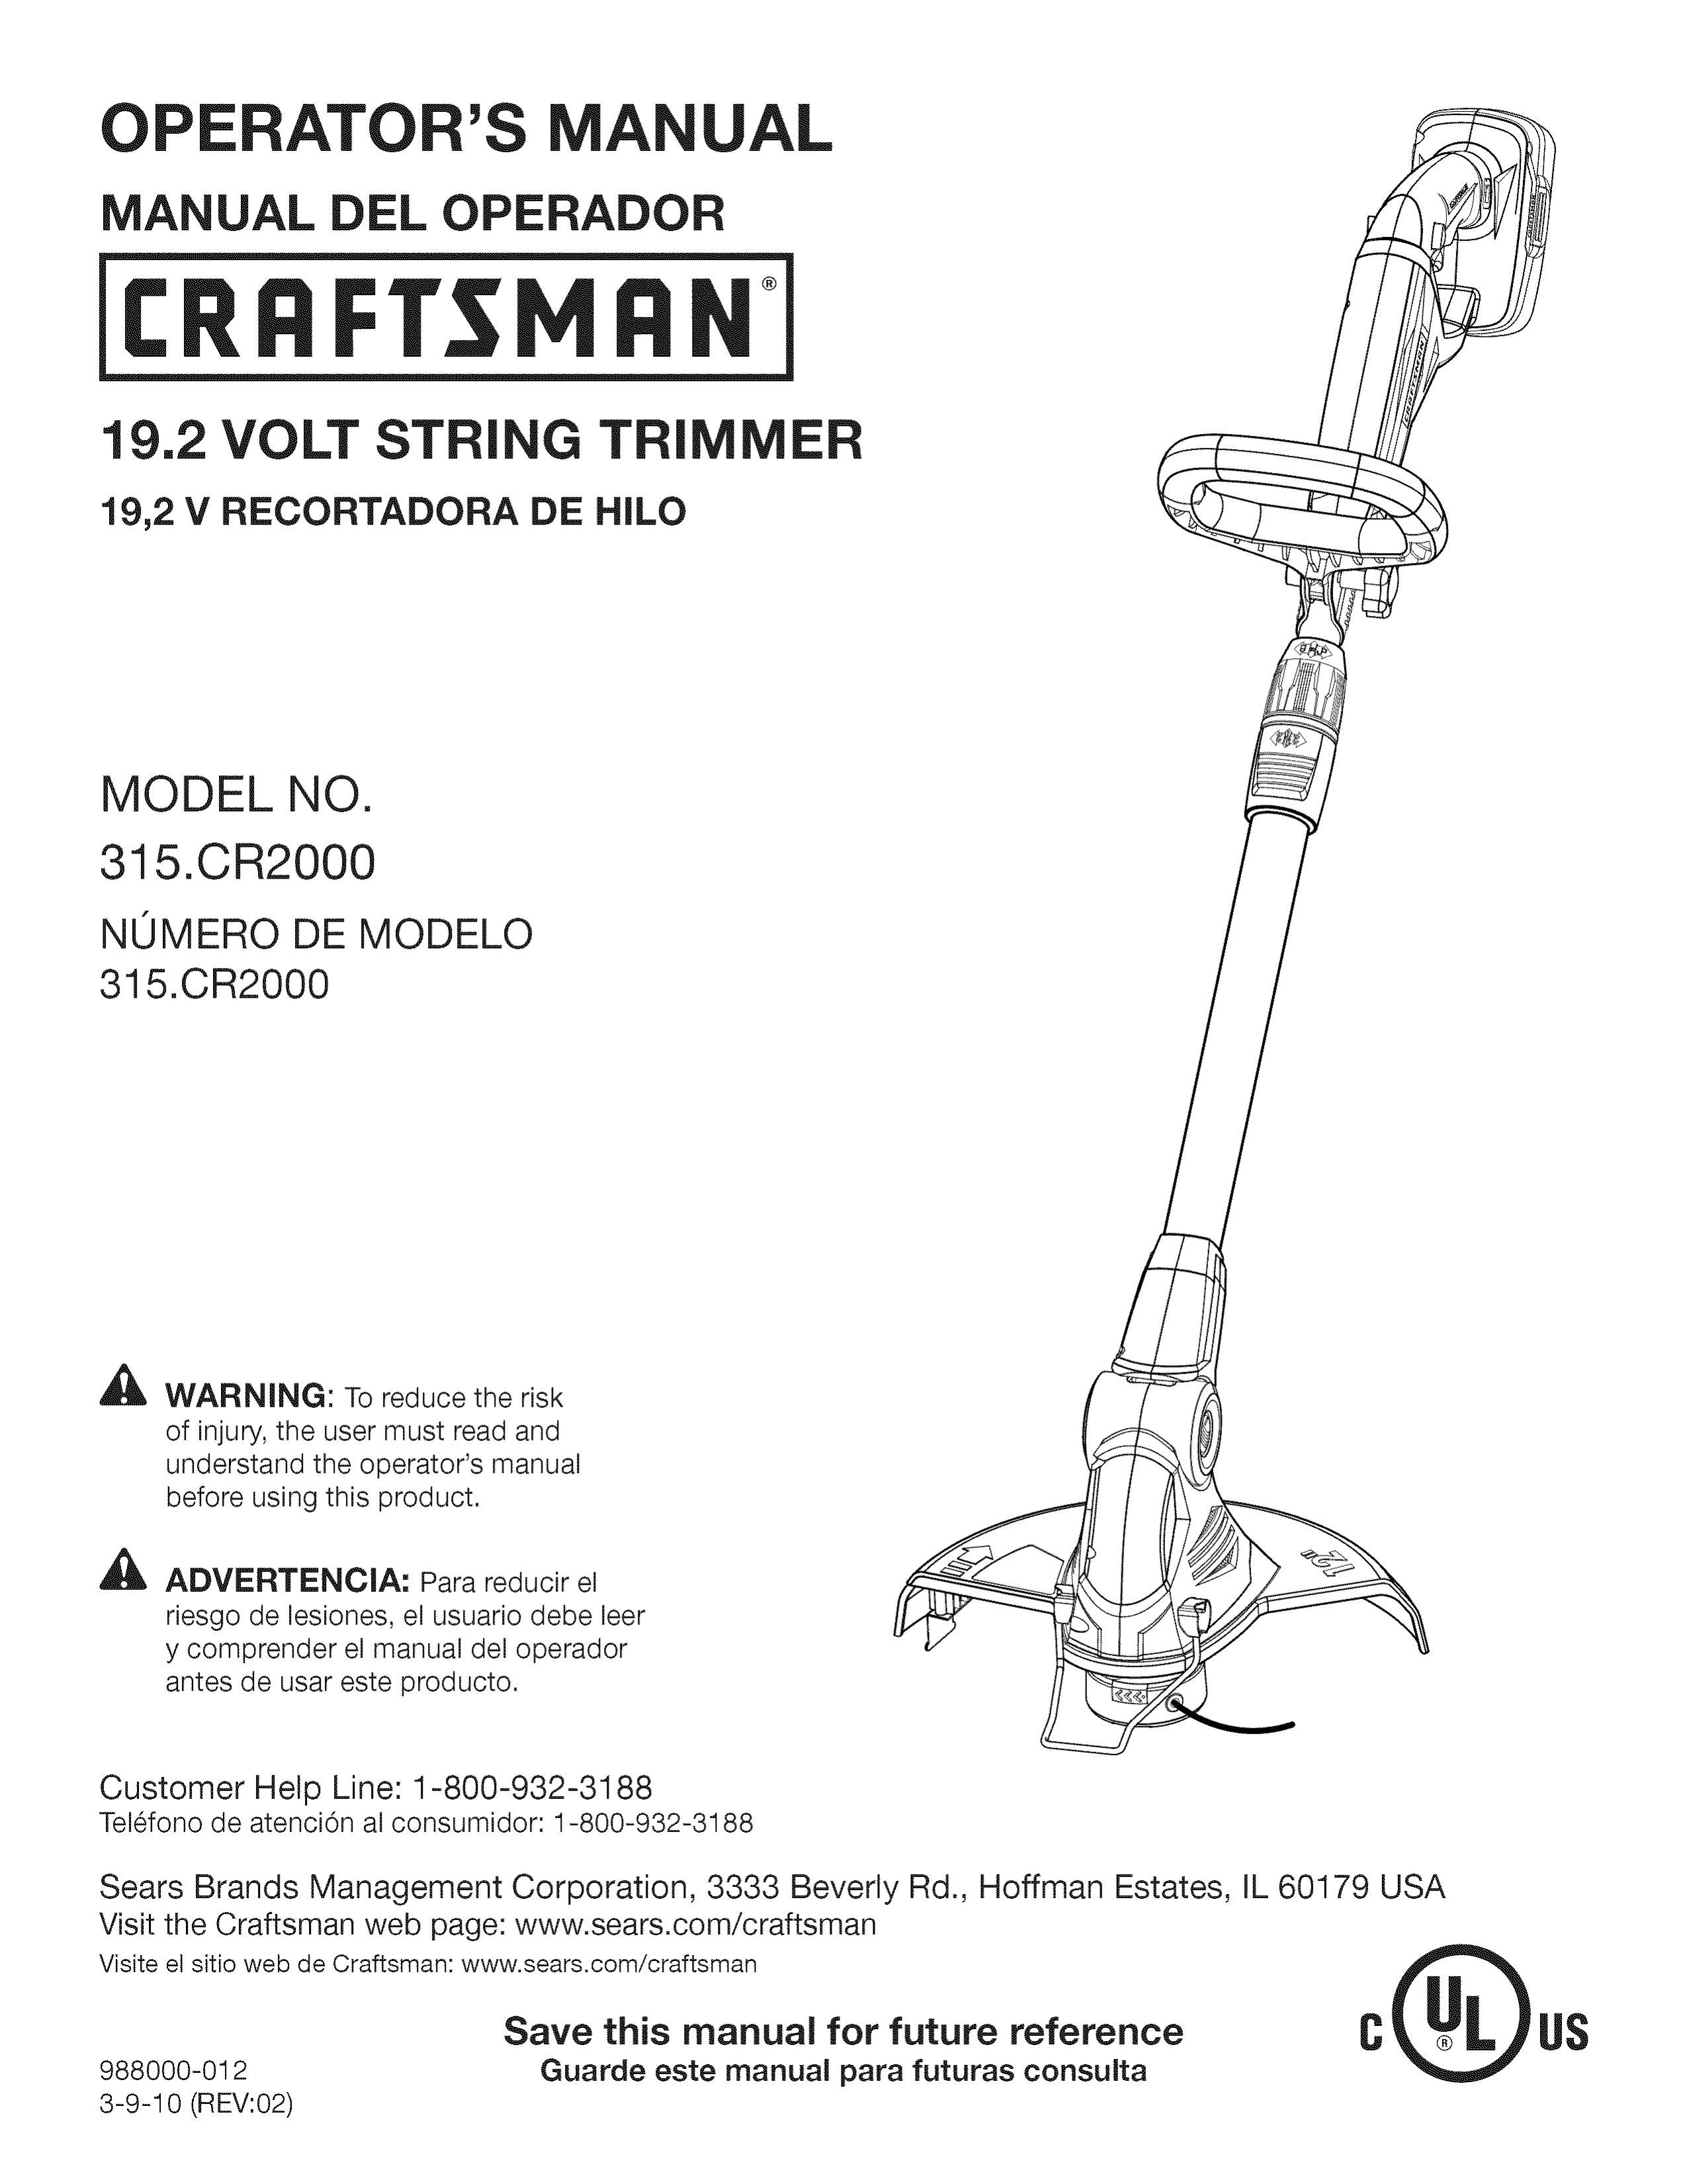 Craftsman 315.CR2000 Trimmer User Manual